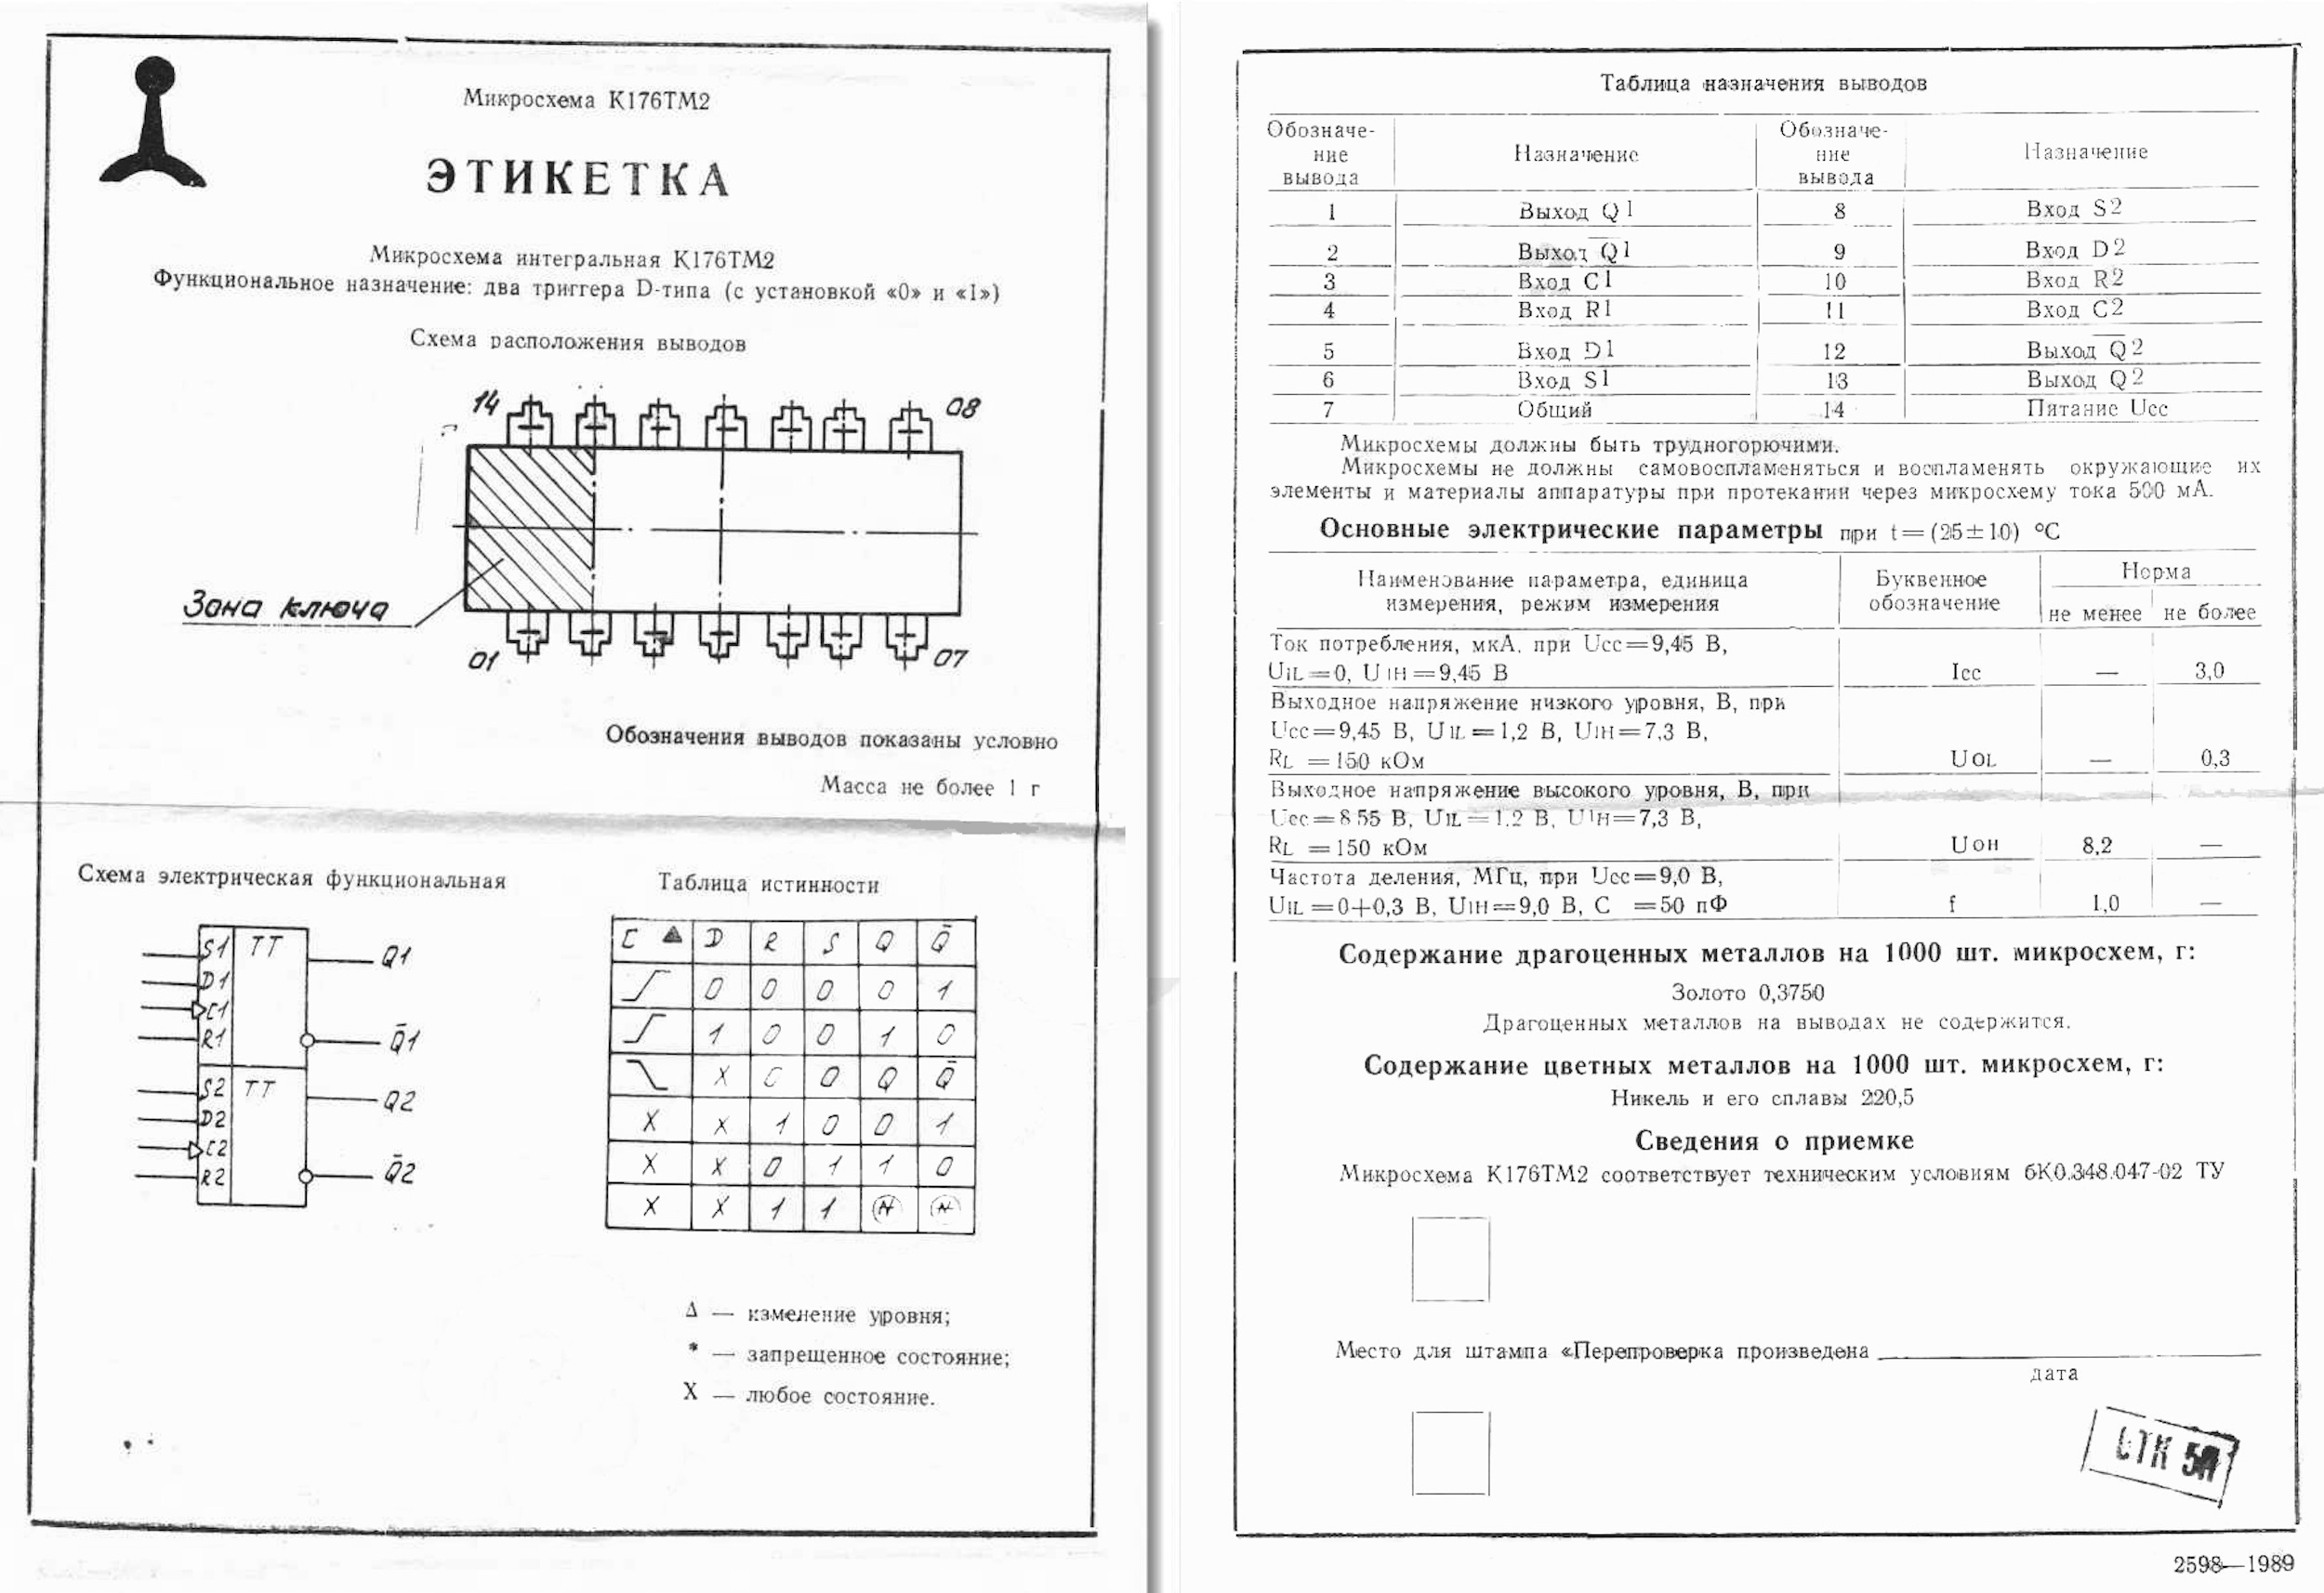 Dosimètres et Compteurs Geiger Müller soviétiques : reviews, tests et réparations Captu948